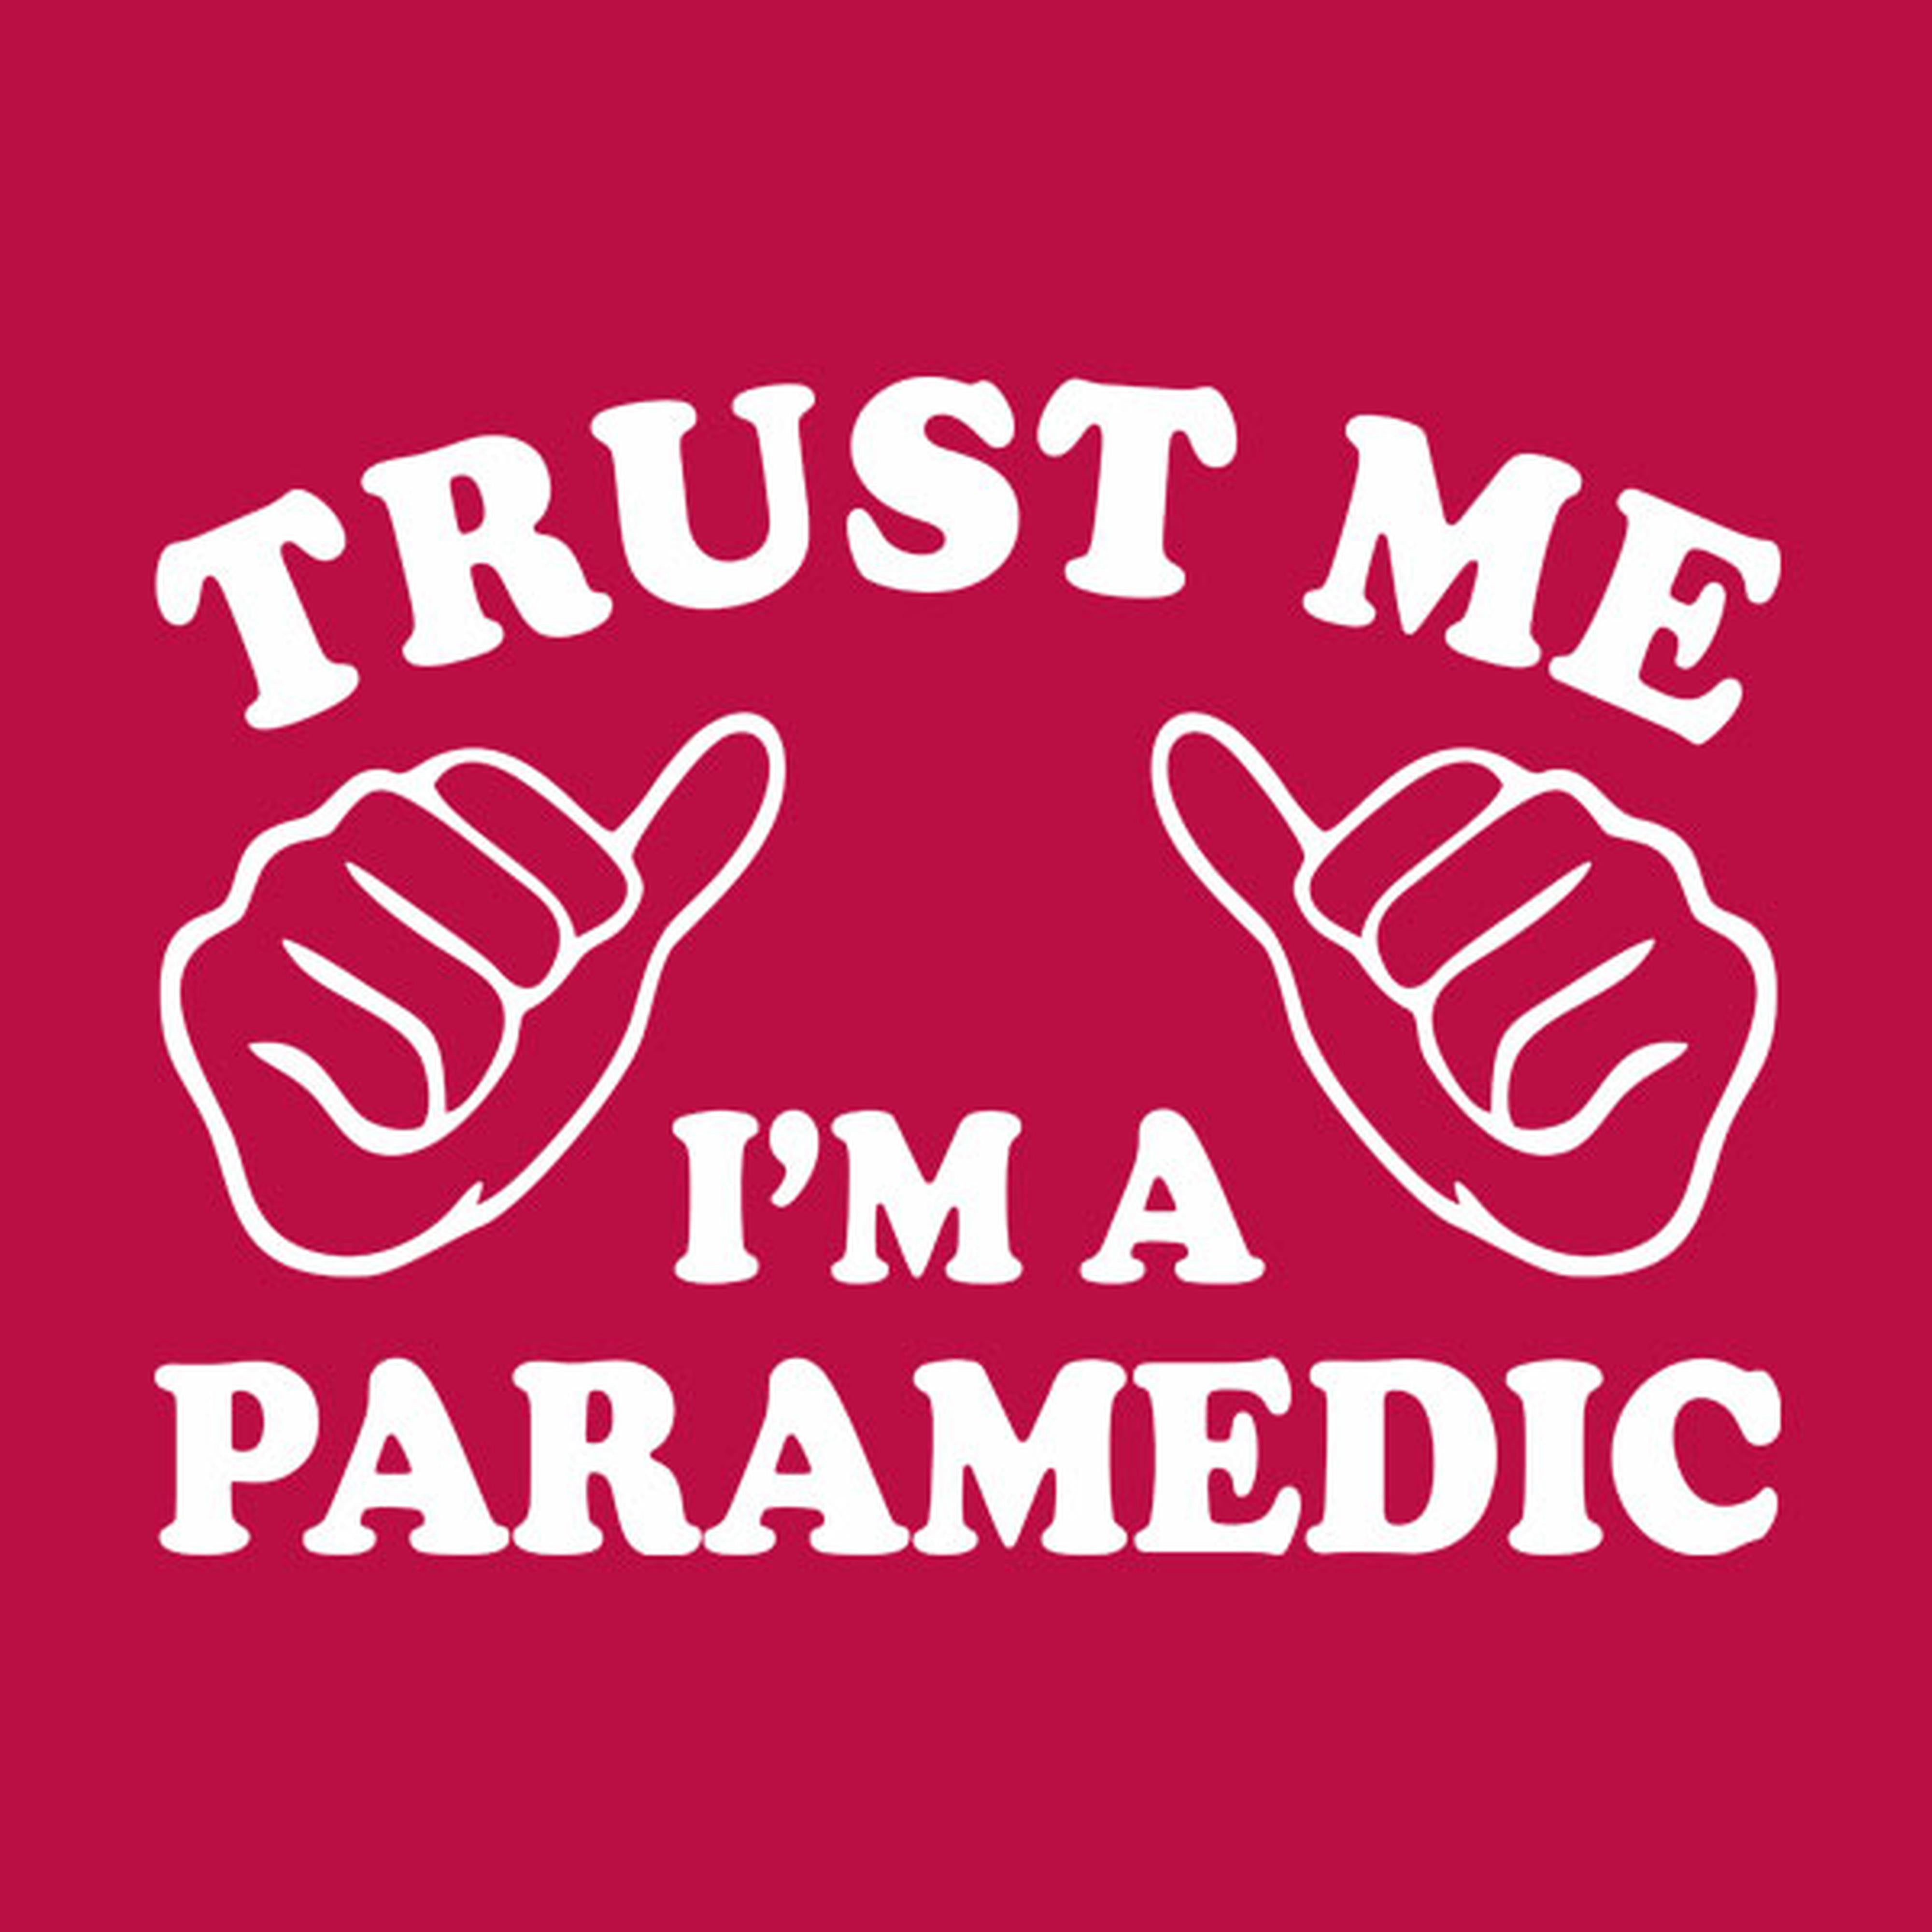 Trust me - I am a paramedic - T-shirt